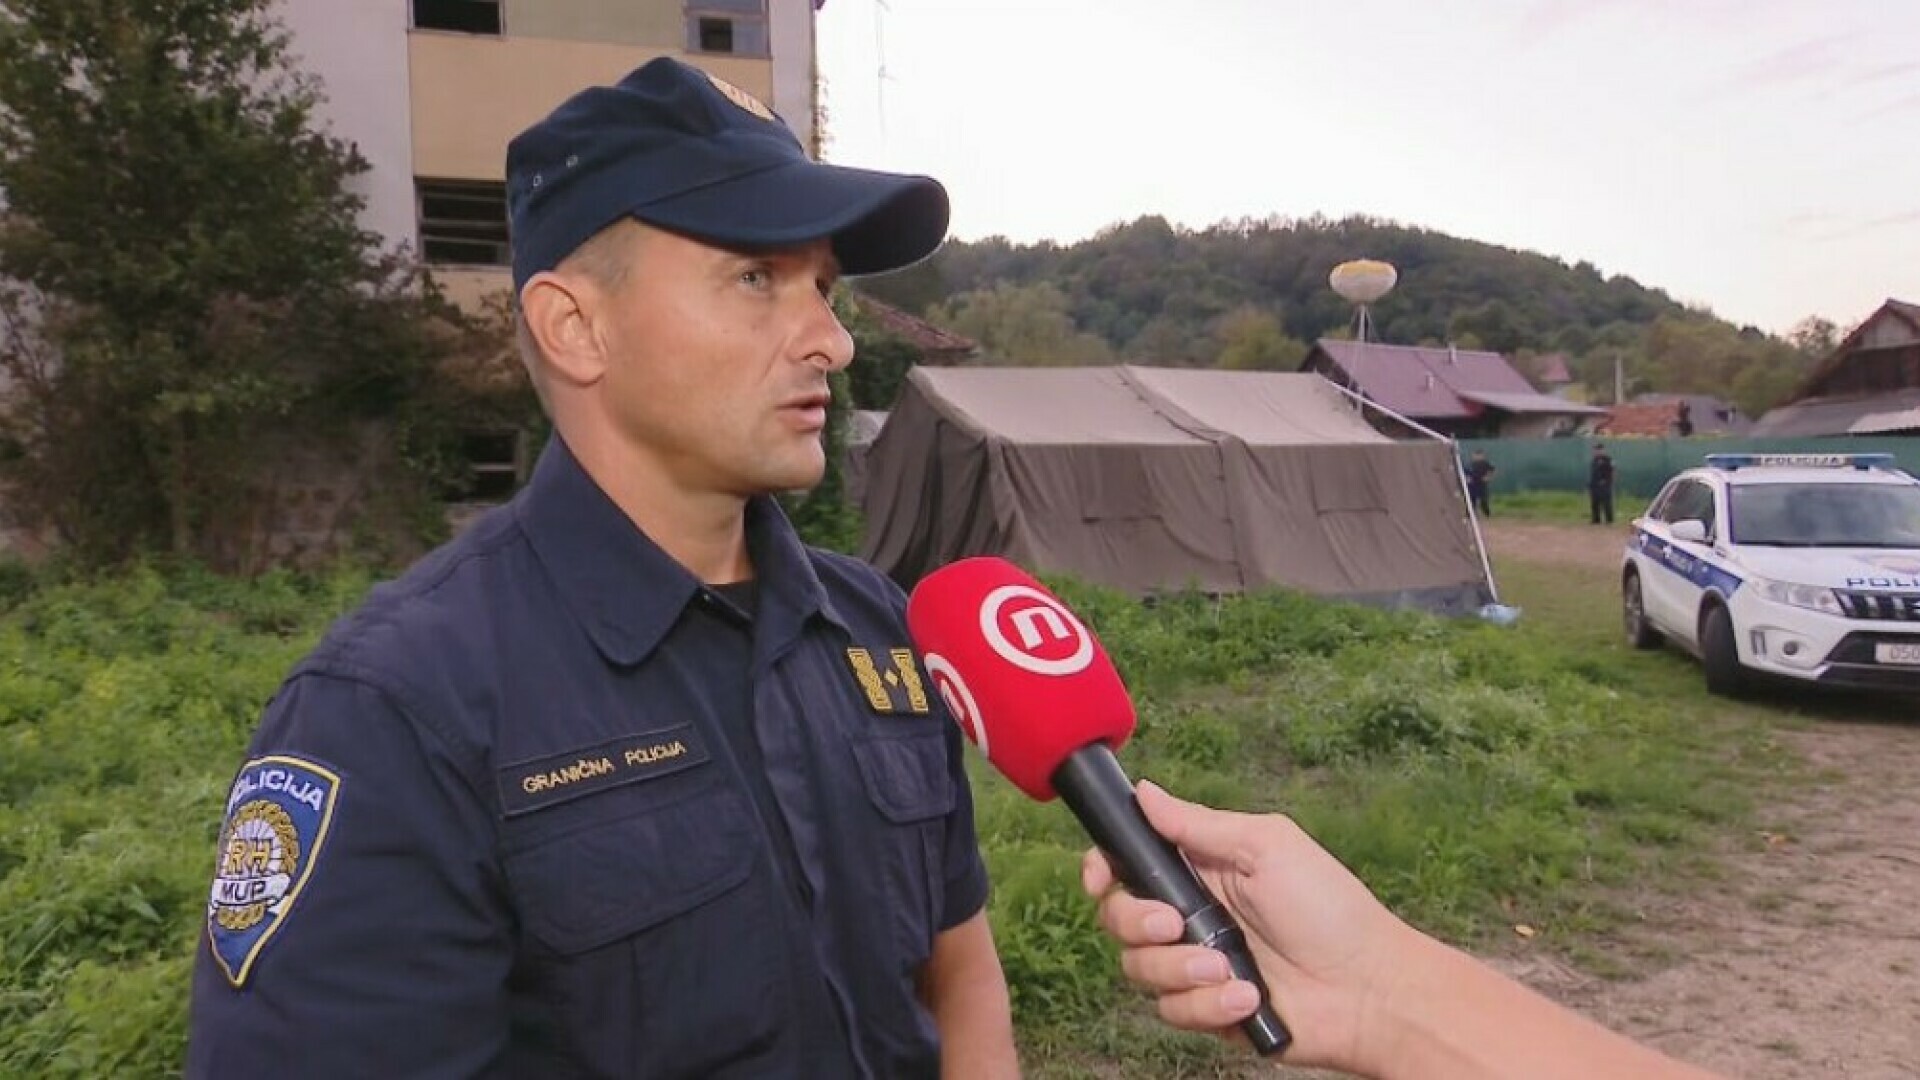 Policija o novom prihvatnom centru za migrante: “Imali bi adekvatnije uvjete za rad”